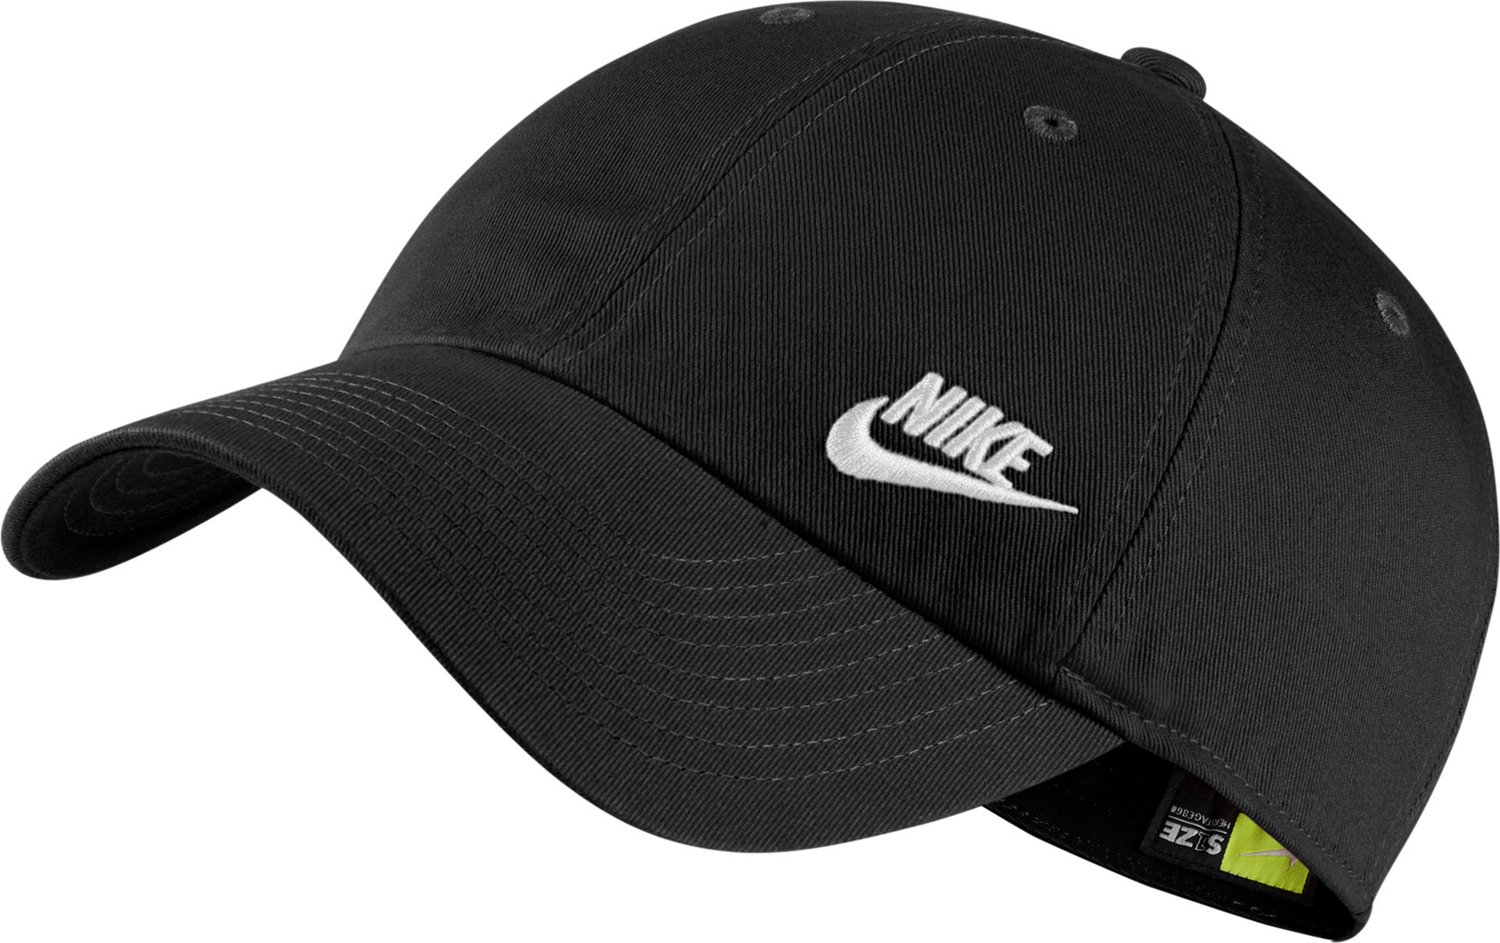 Dallas Mavericks Heritage86 Nike NBA Adjustable Hat.